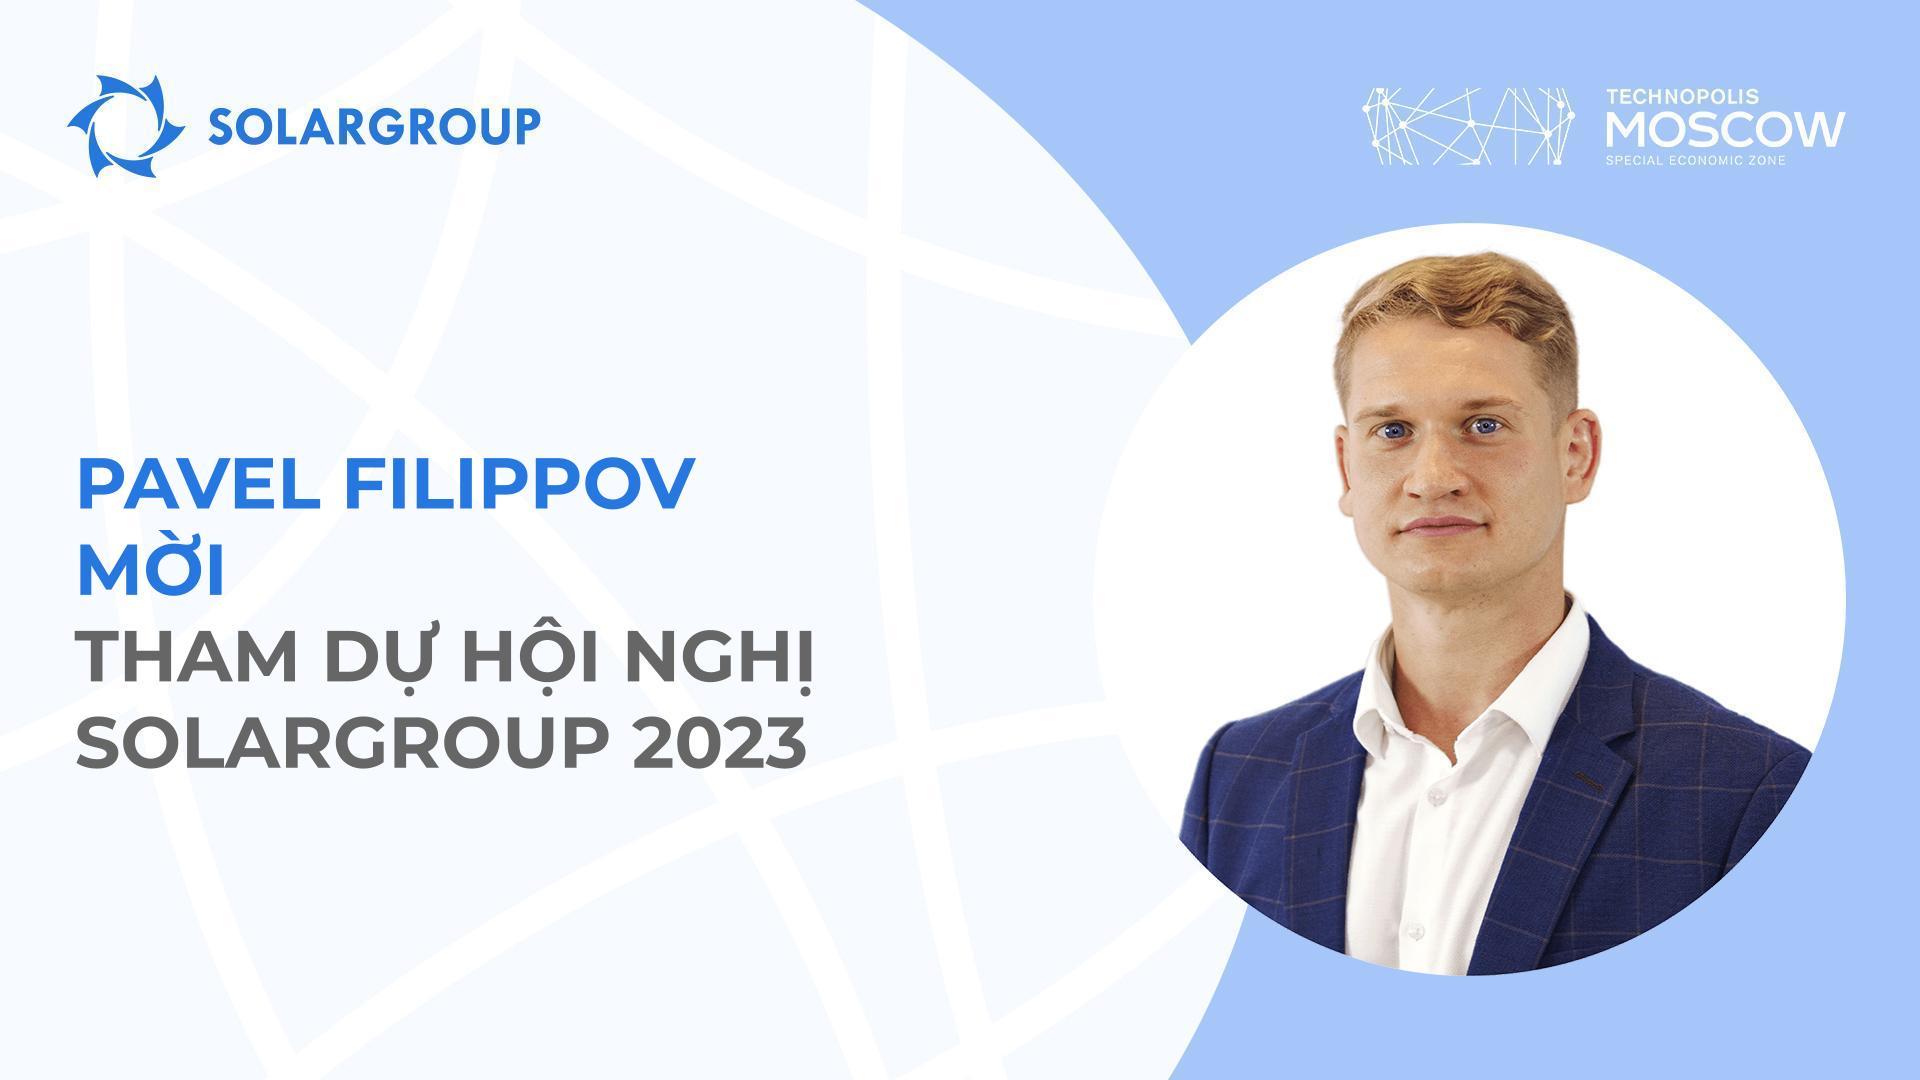 “Đây là điều mà tất cả các nhà đầu tư, đối tác của dự án đều mong đợi” - Pavel Filippov nói về hội nghị SOLARGROUP sắp tới